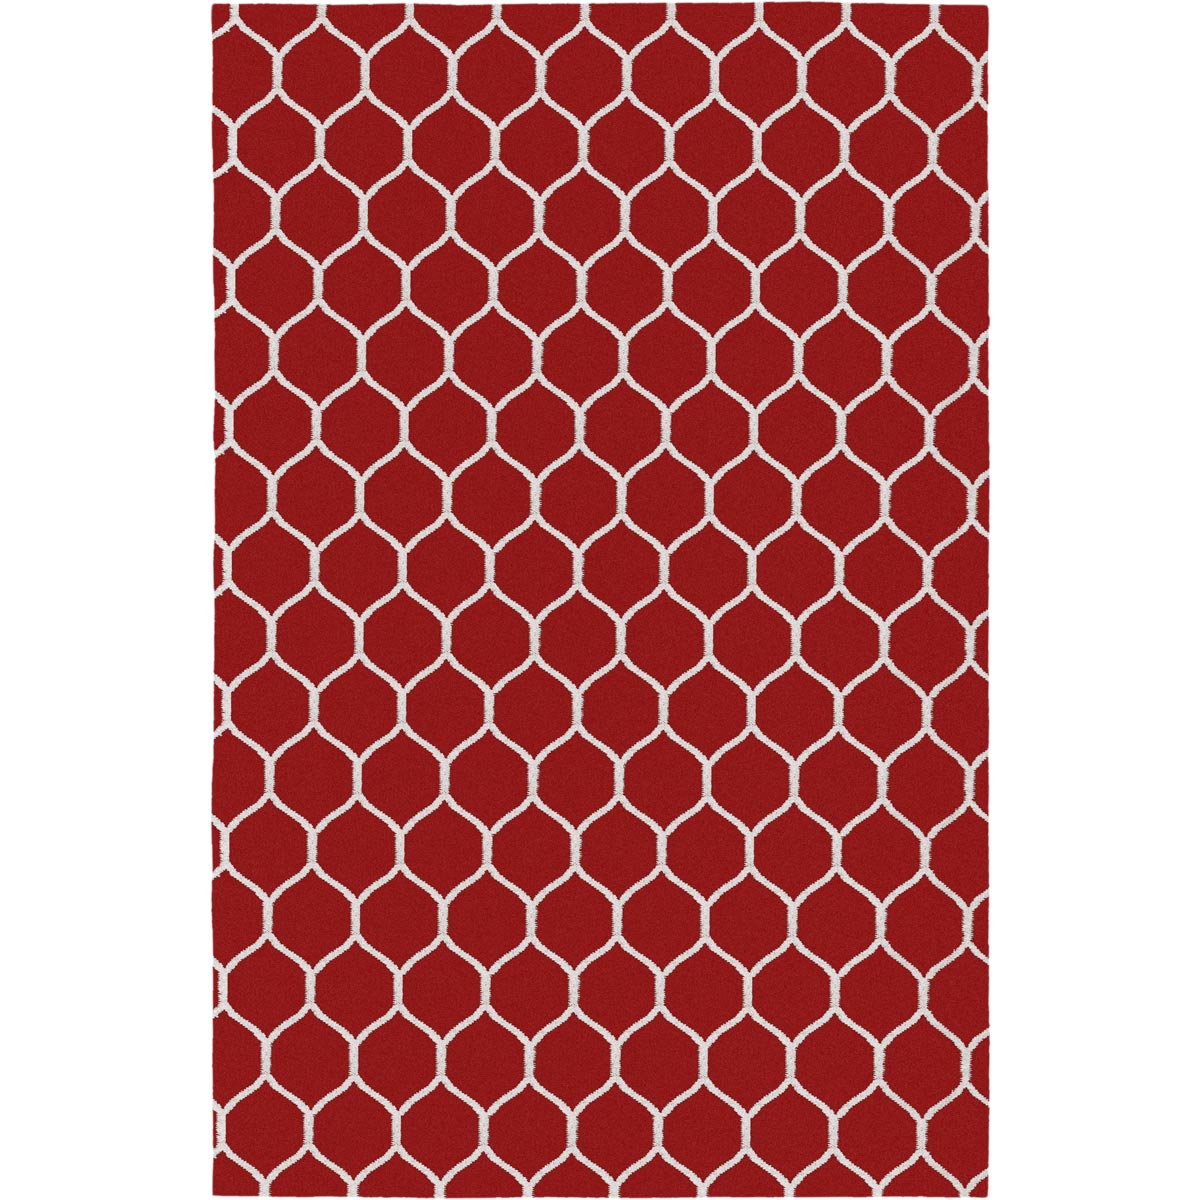 שטיח קילים הדס 04 אדום/לבן | השטיח האדום